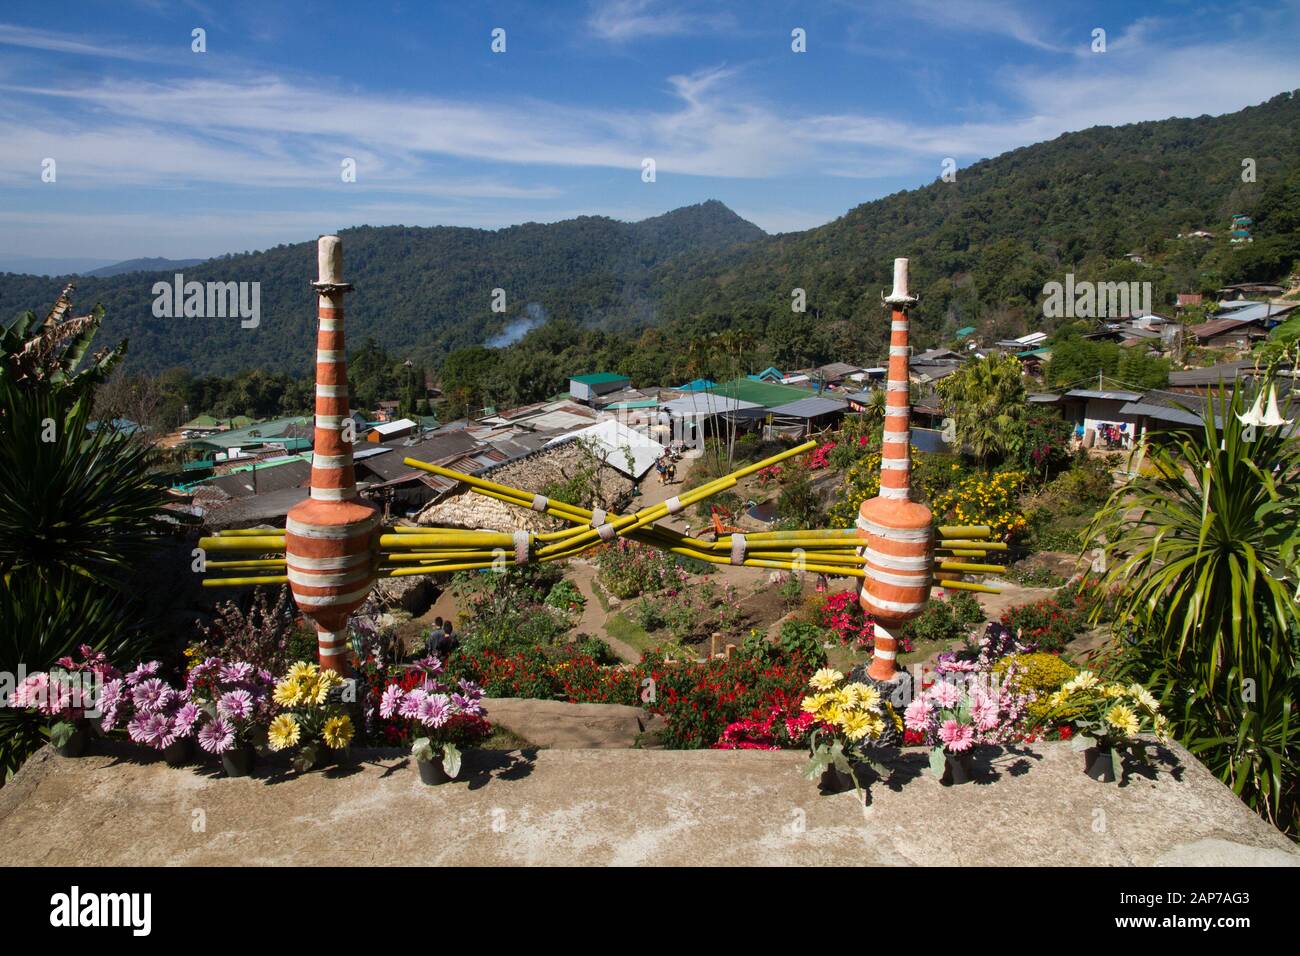 Village de Hmong, Thaïlande province de Chiang Mai Banque D'Images